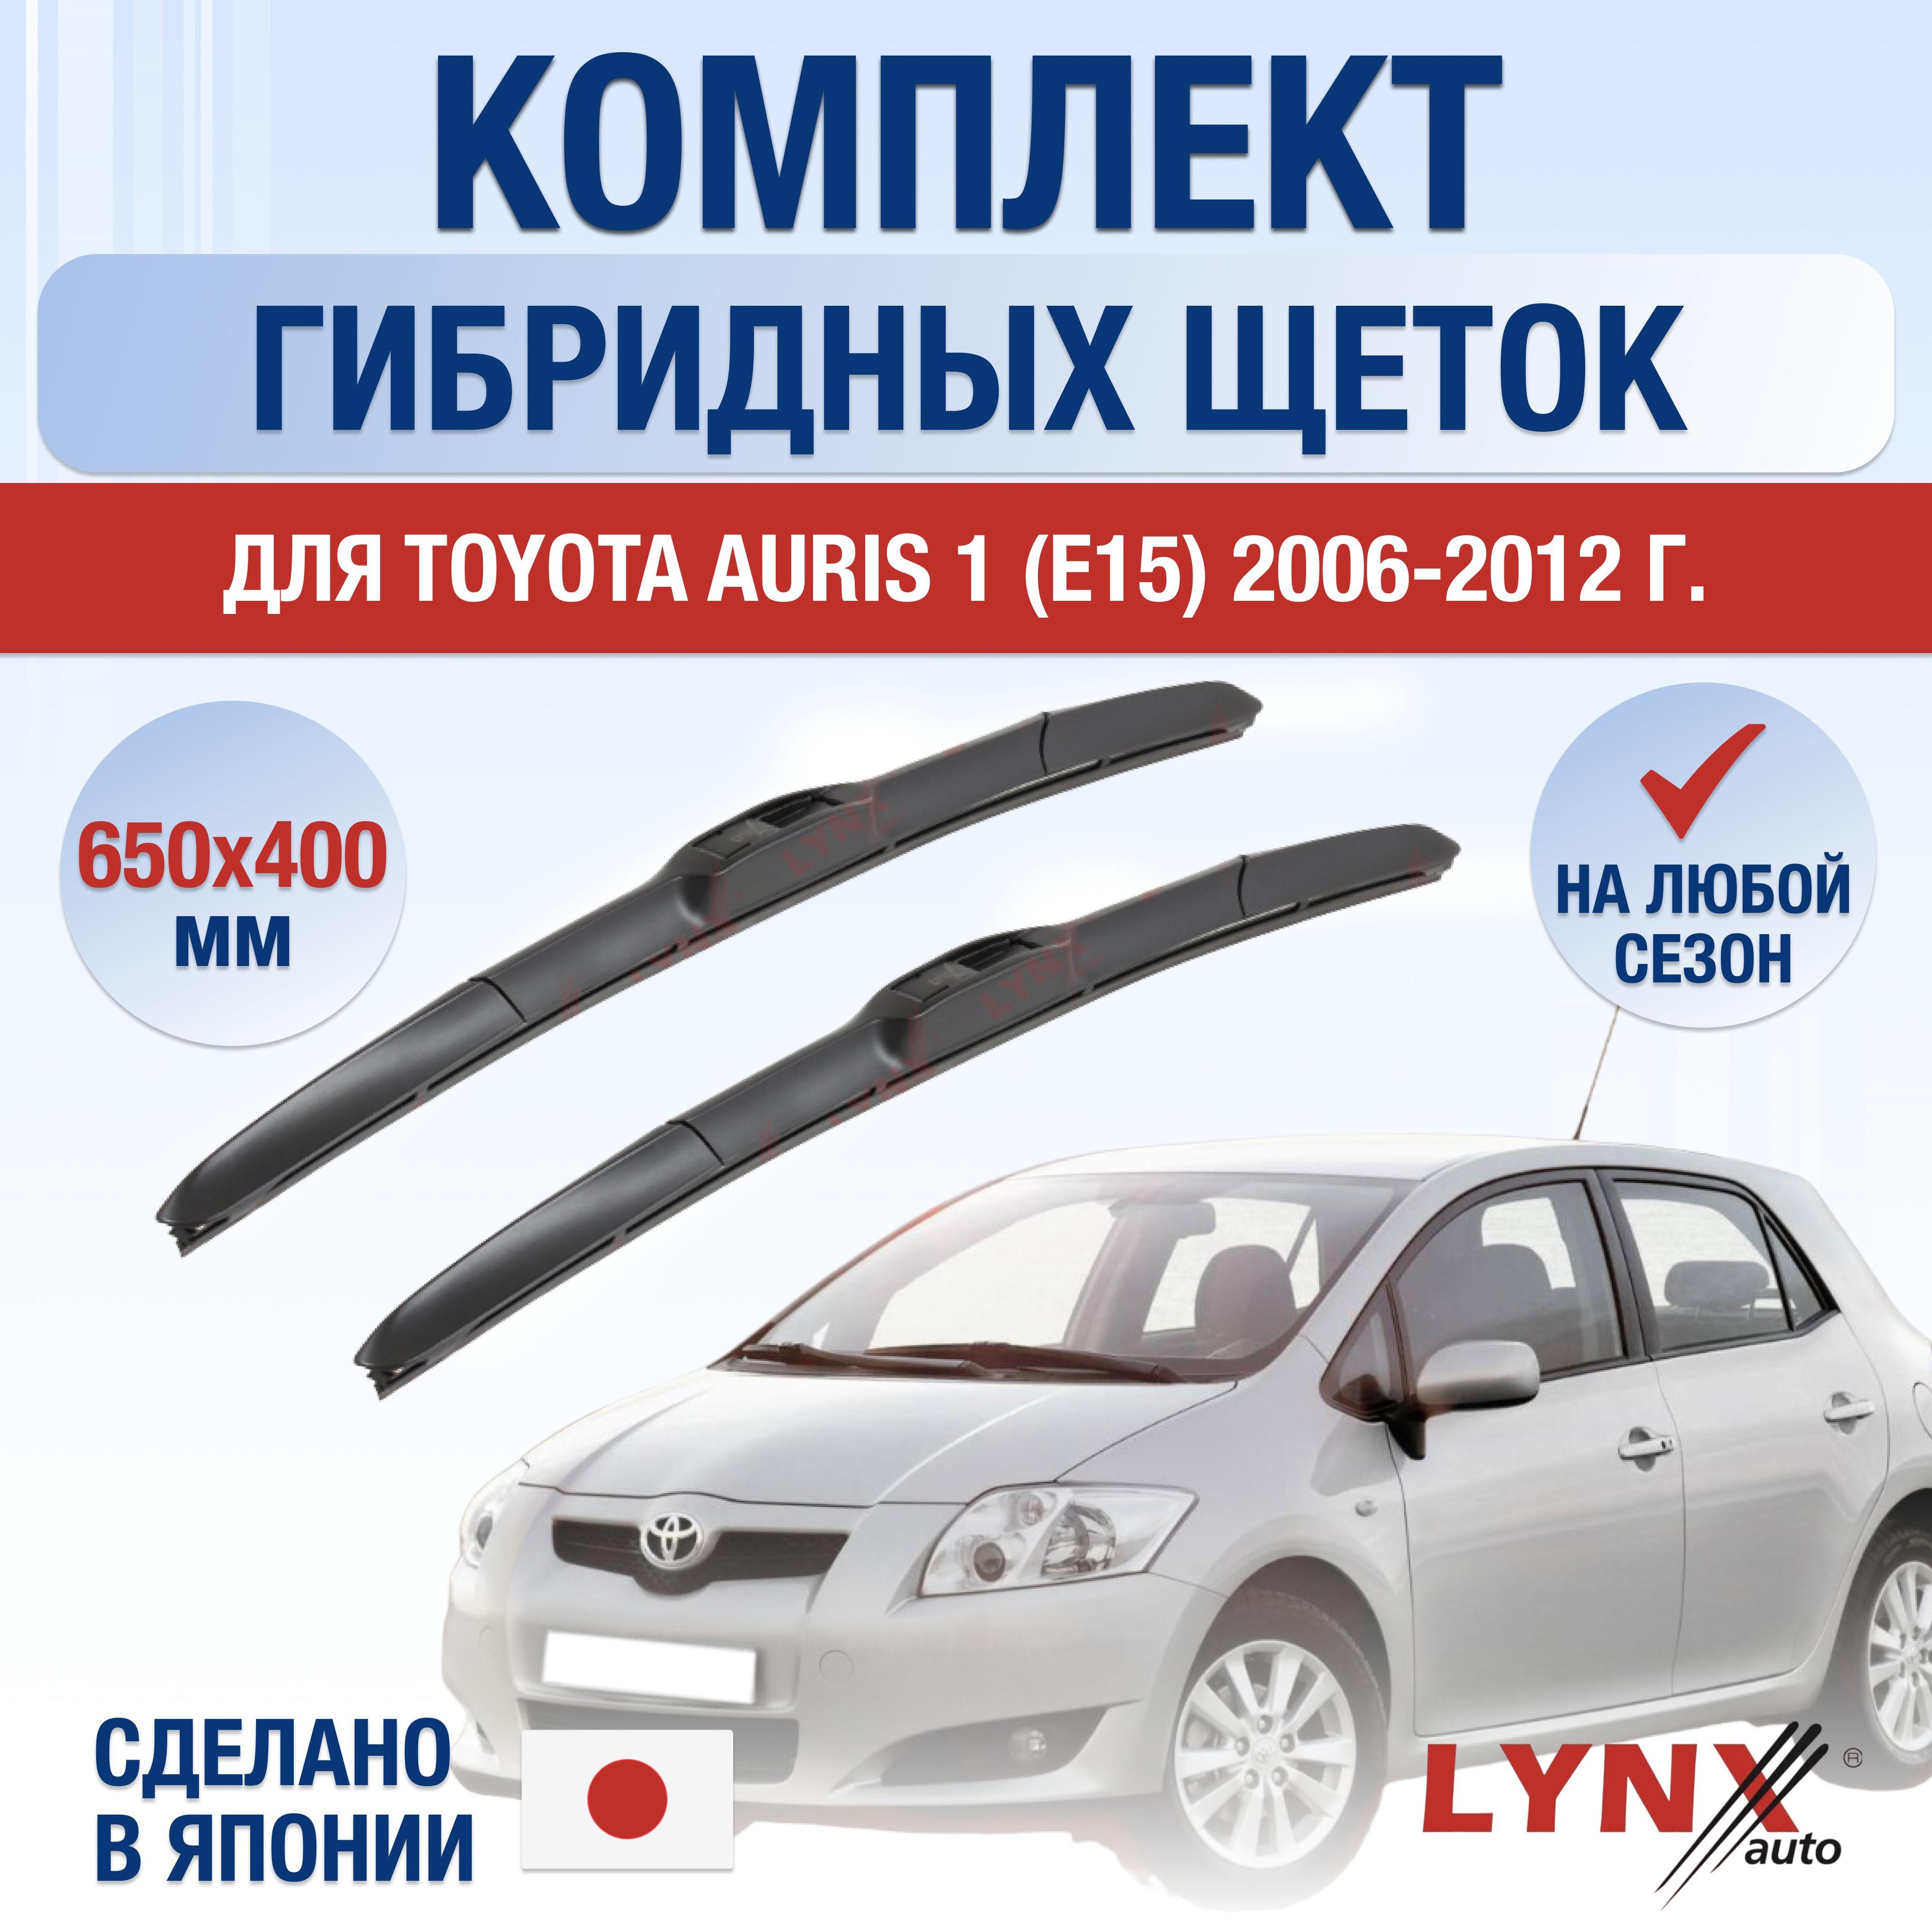 LYNXauto | Щетки стеклоочистителя для Toyota Auris (1) E150 / 2006 2007 2008 2009 2010 2011 2012 / Комплект гибридных дворников 650 400 мм Тойота Аурис